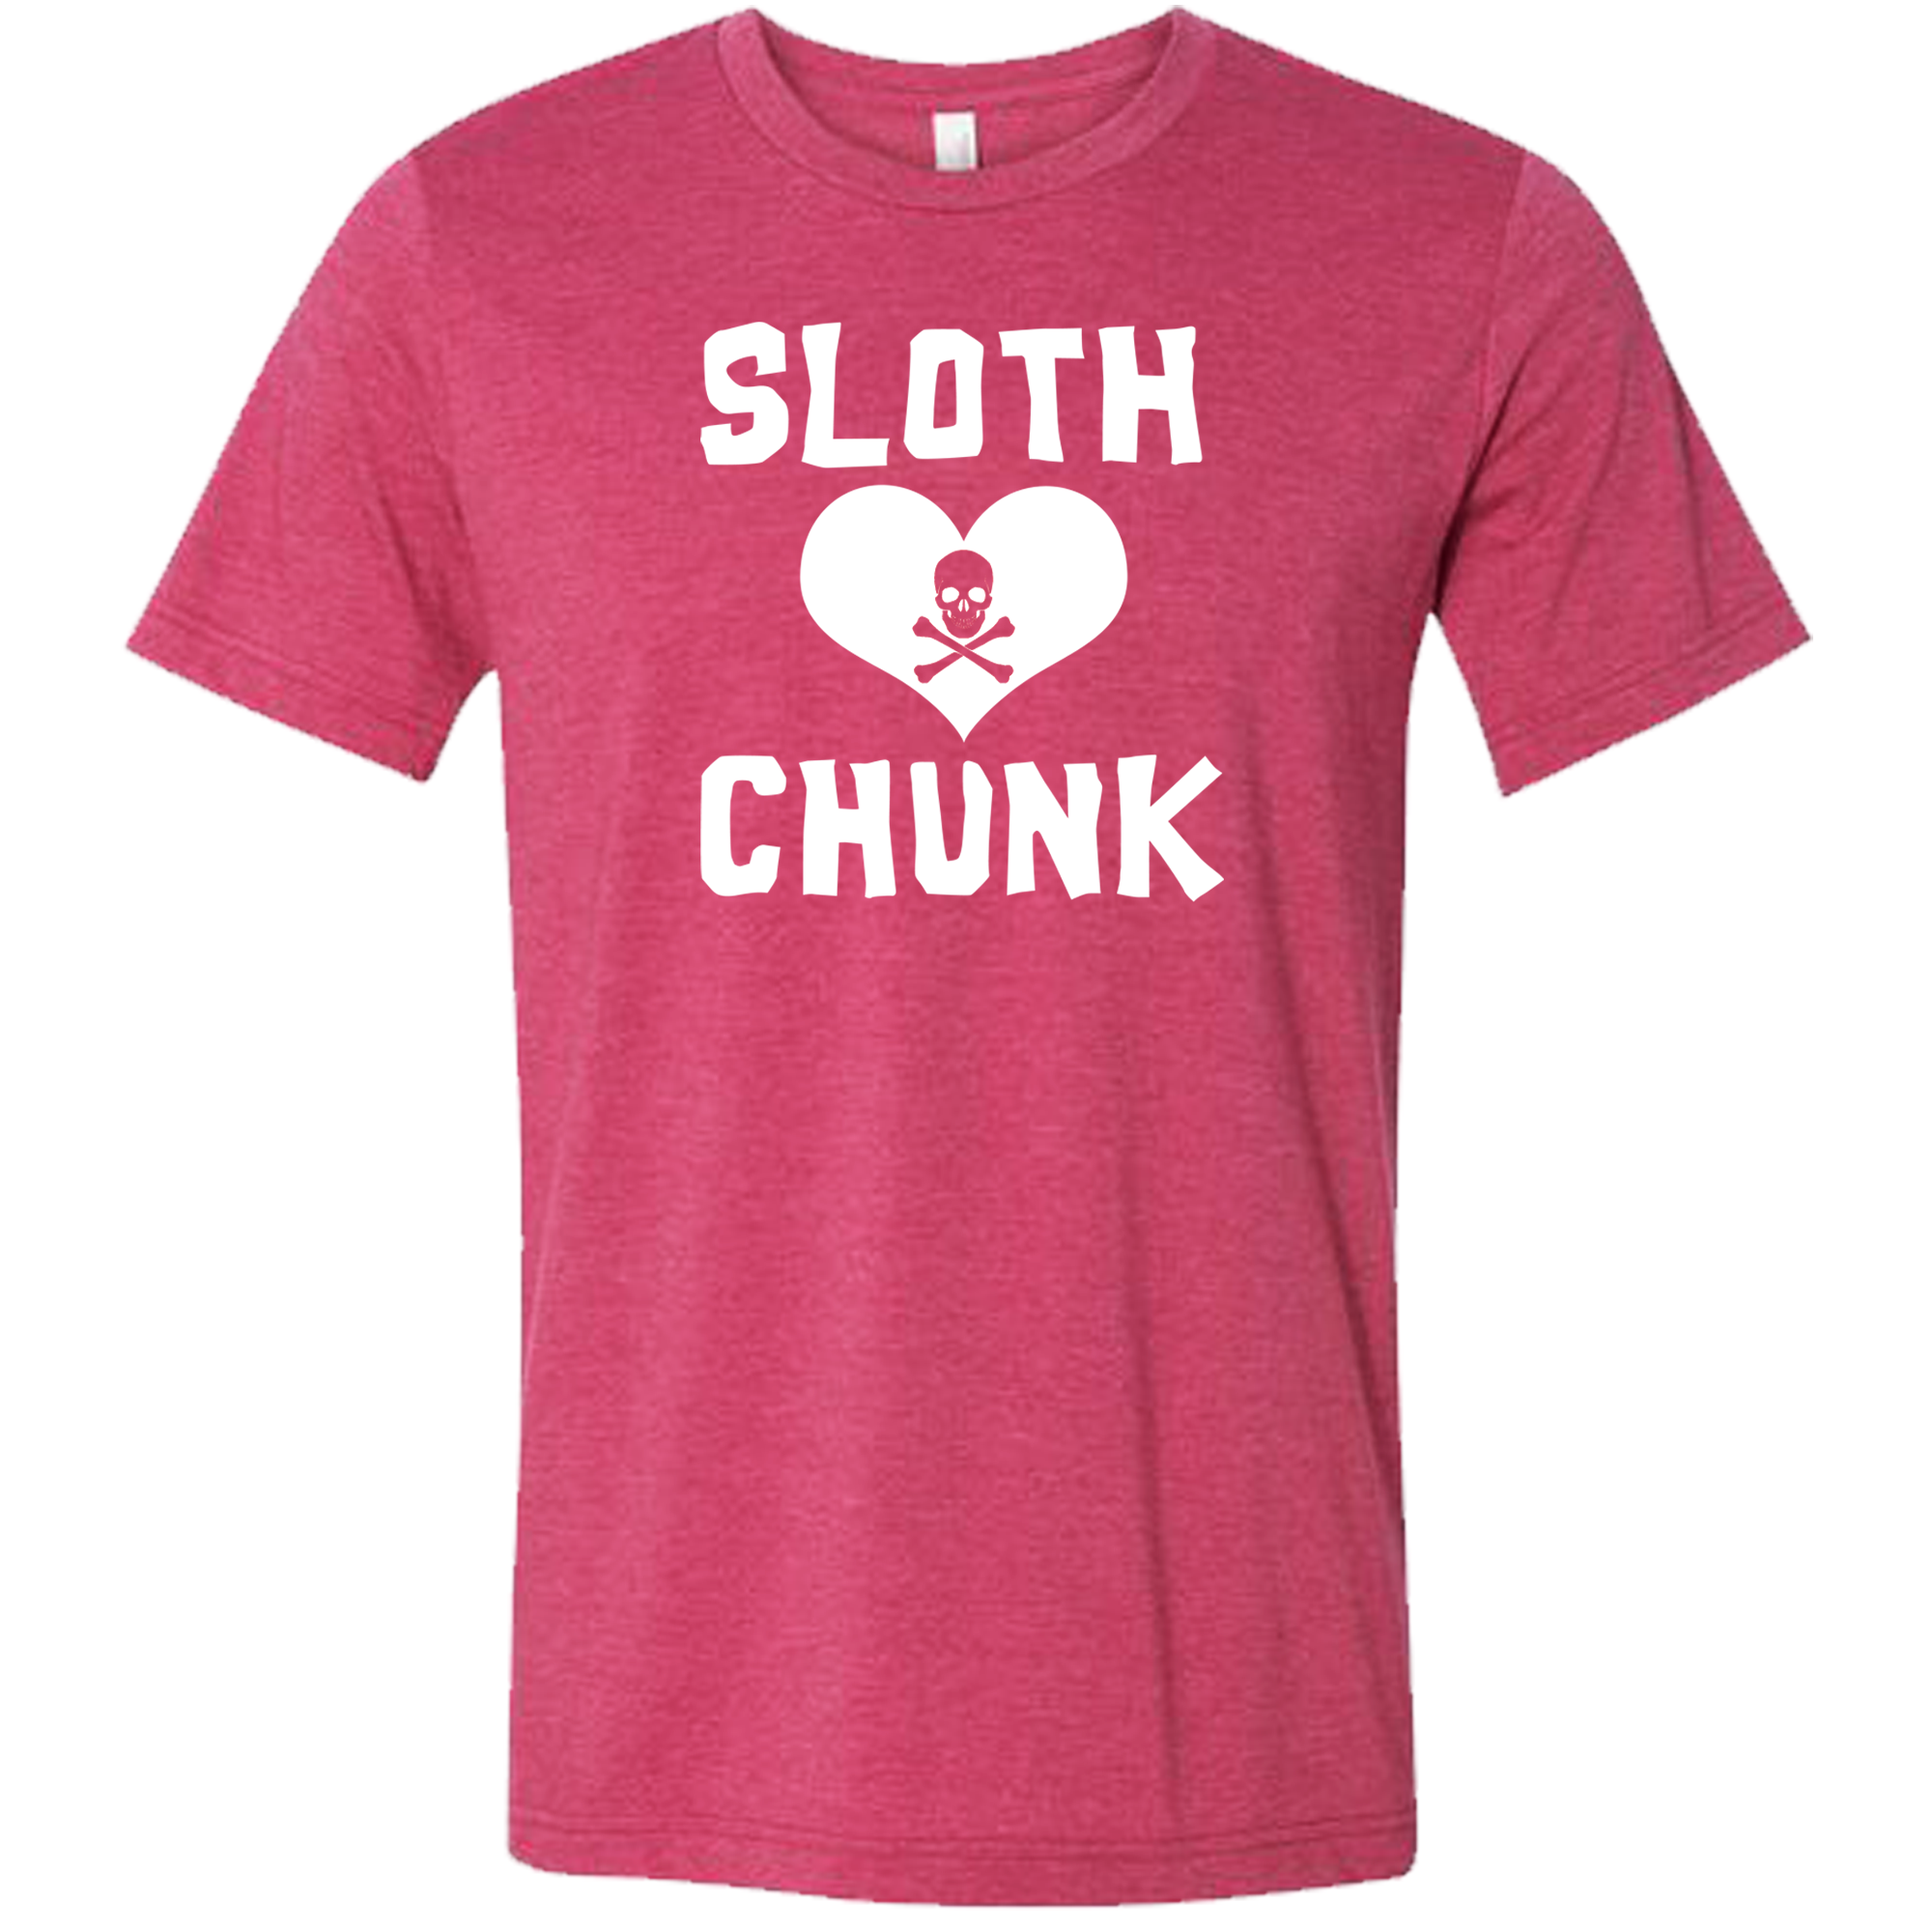 Sloth and Chunk T-Shirt, Goonies Tee Shirt, Sloth Loves Chunk Shirt, Never Say Die